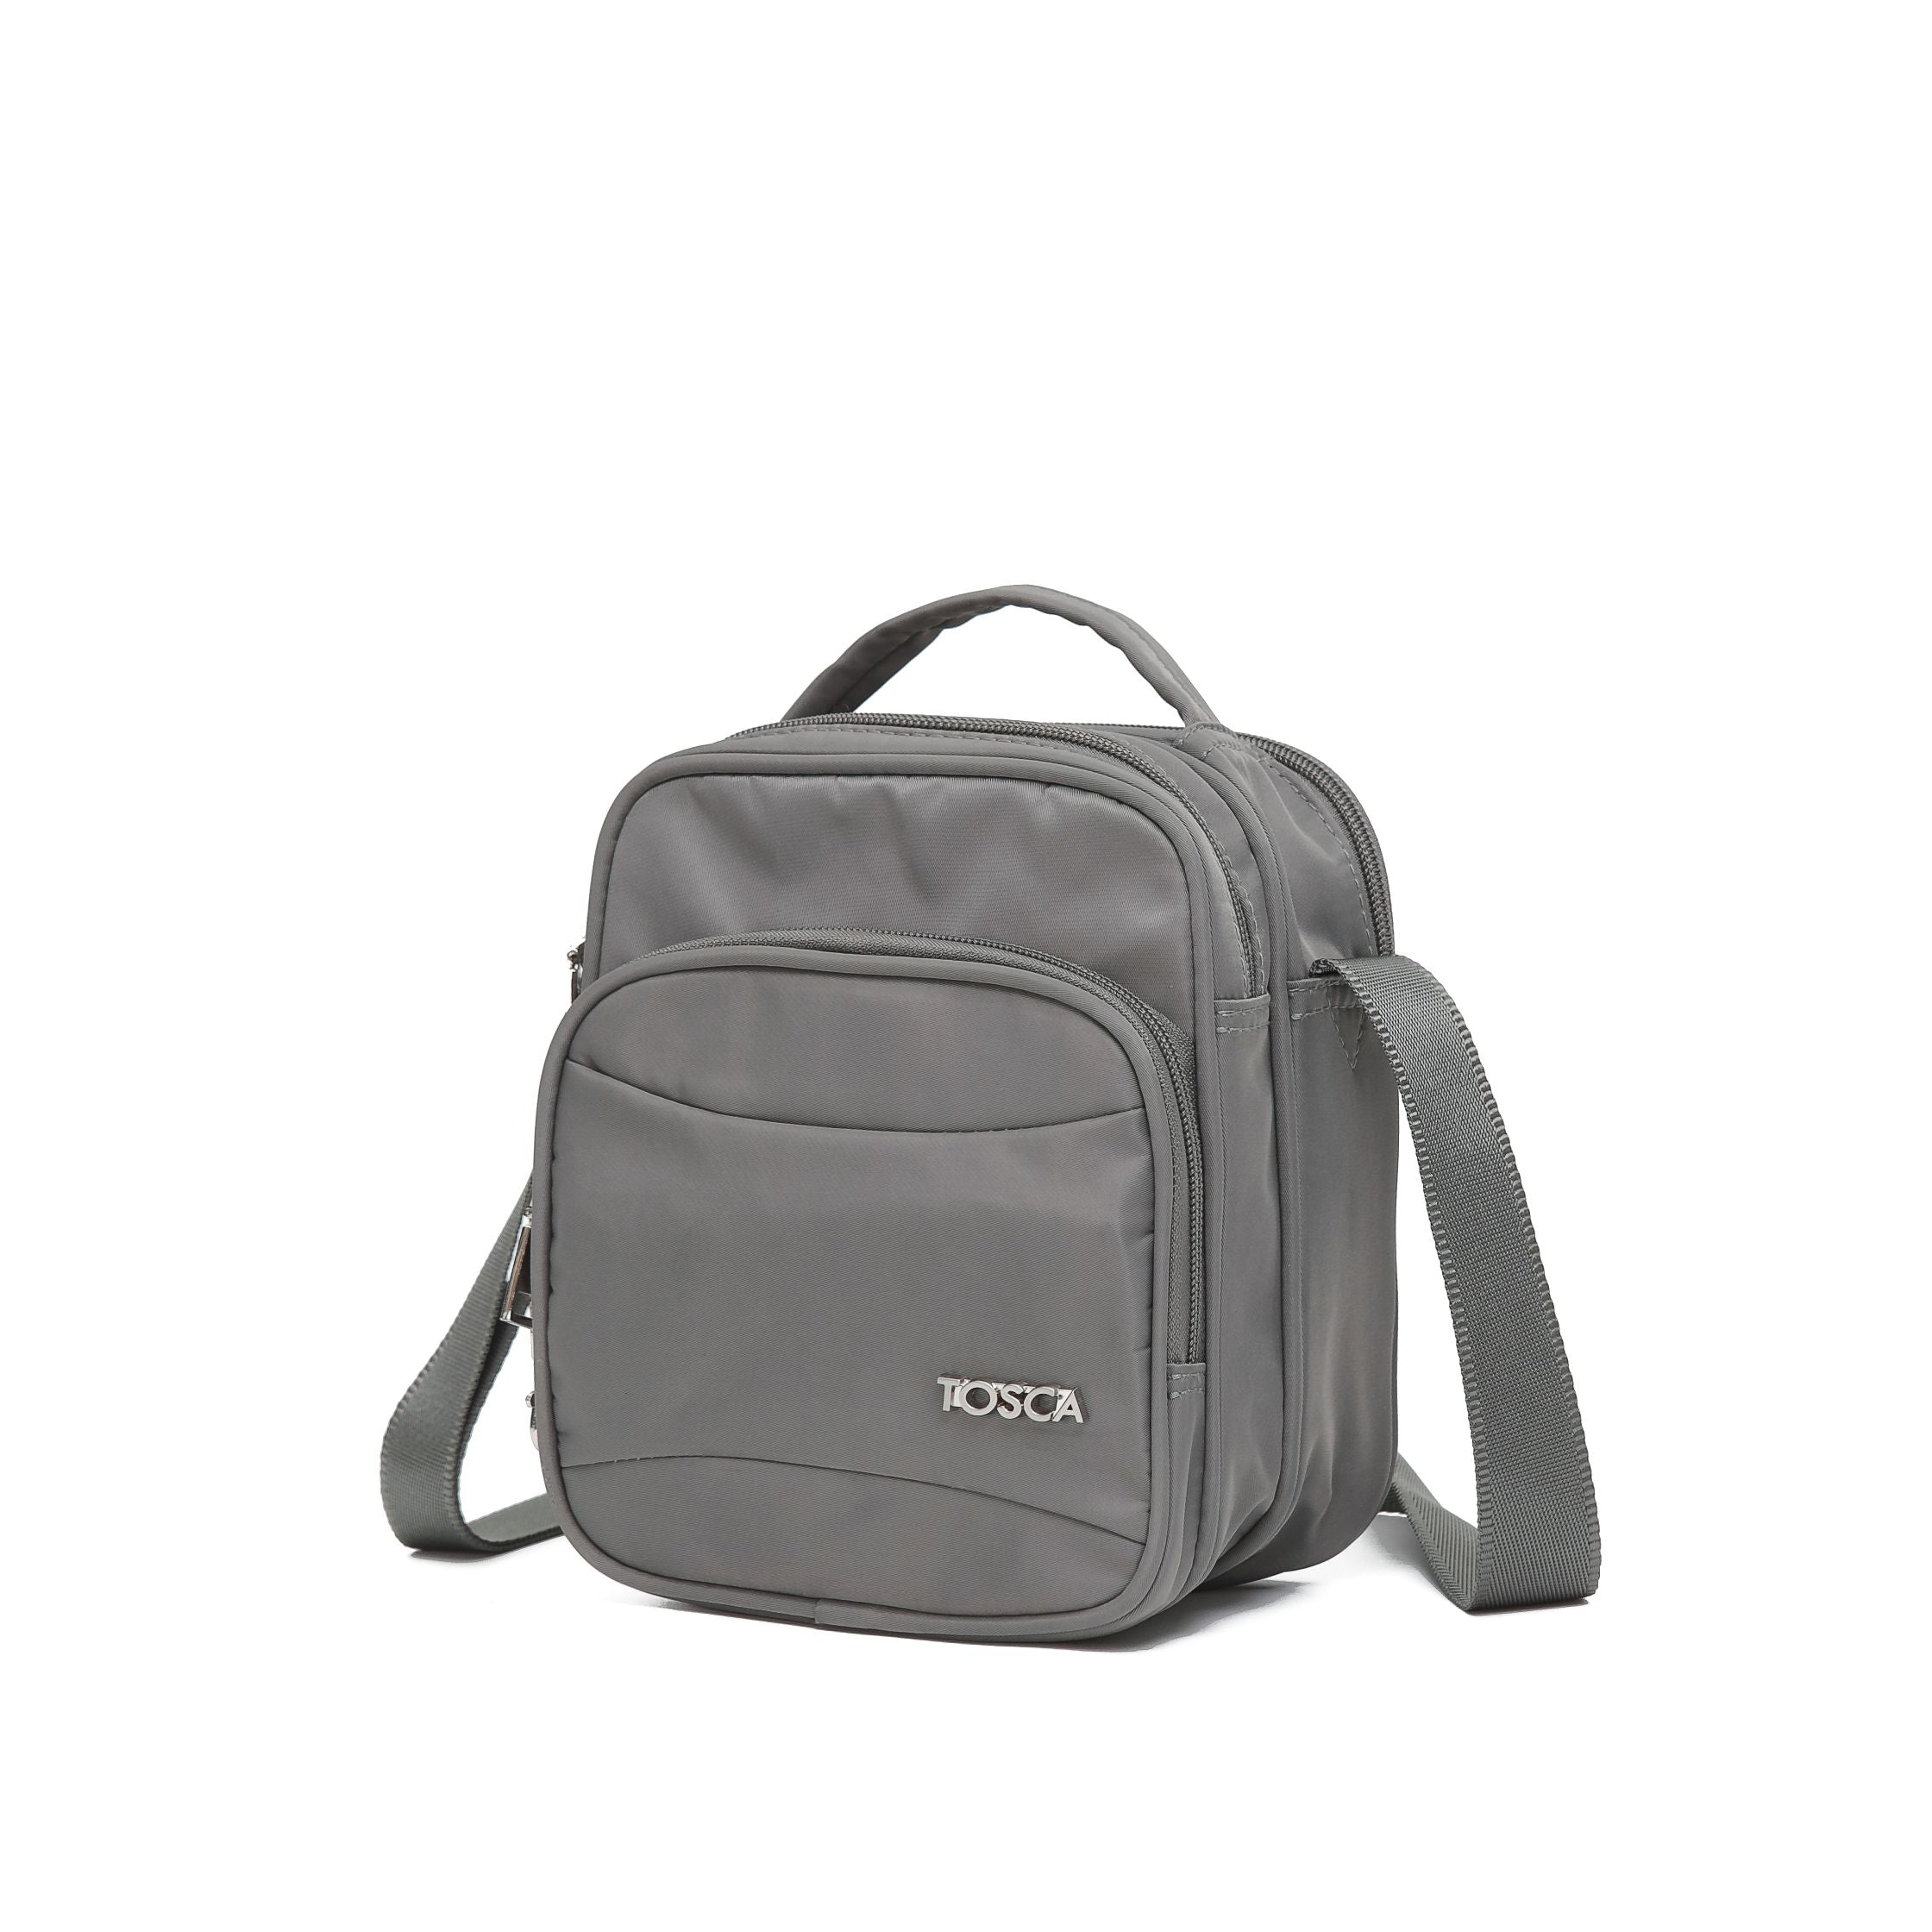 Tosca - TCA955 Small Anti Theft shoulder bag - Khaki